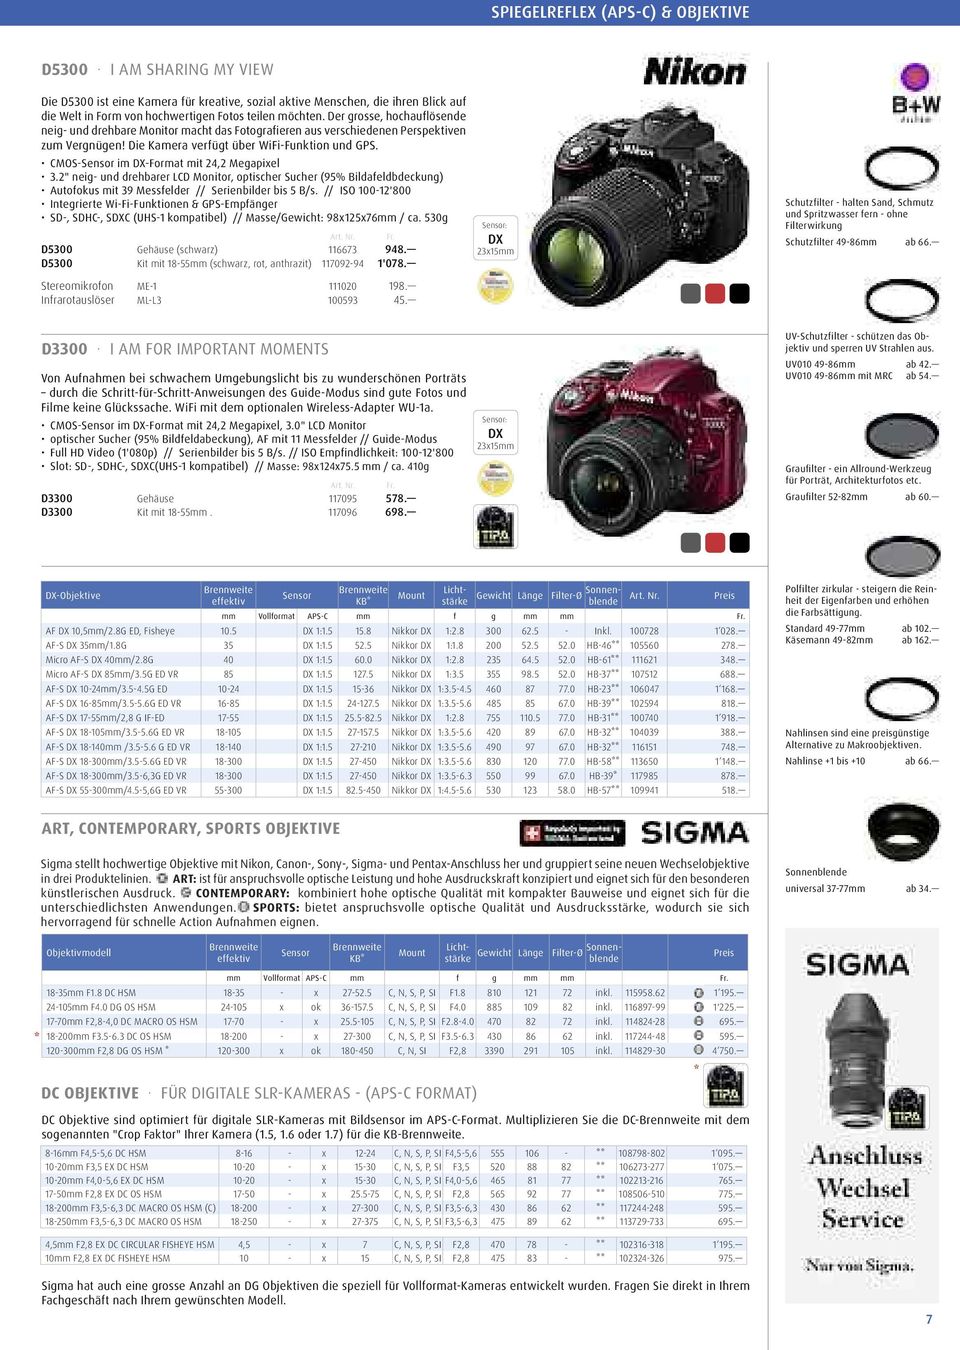 CMOS-Sensor im DX-Format mit 24,2 Megapixel 3.2" neig- und drehbarer LCD Monitor, optischer Sucher (95% Bildafeldbdeckung) Autofokus mit 39 Messfelder // Serienbilder bis 5 B/s.